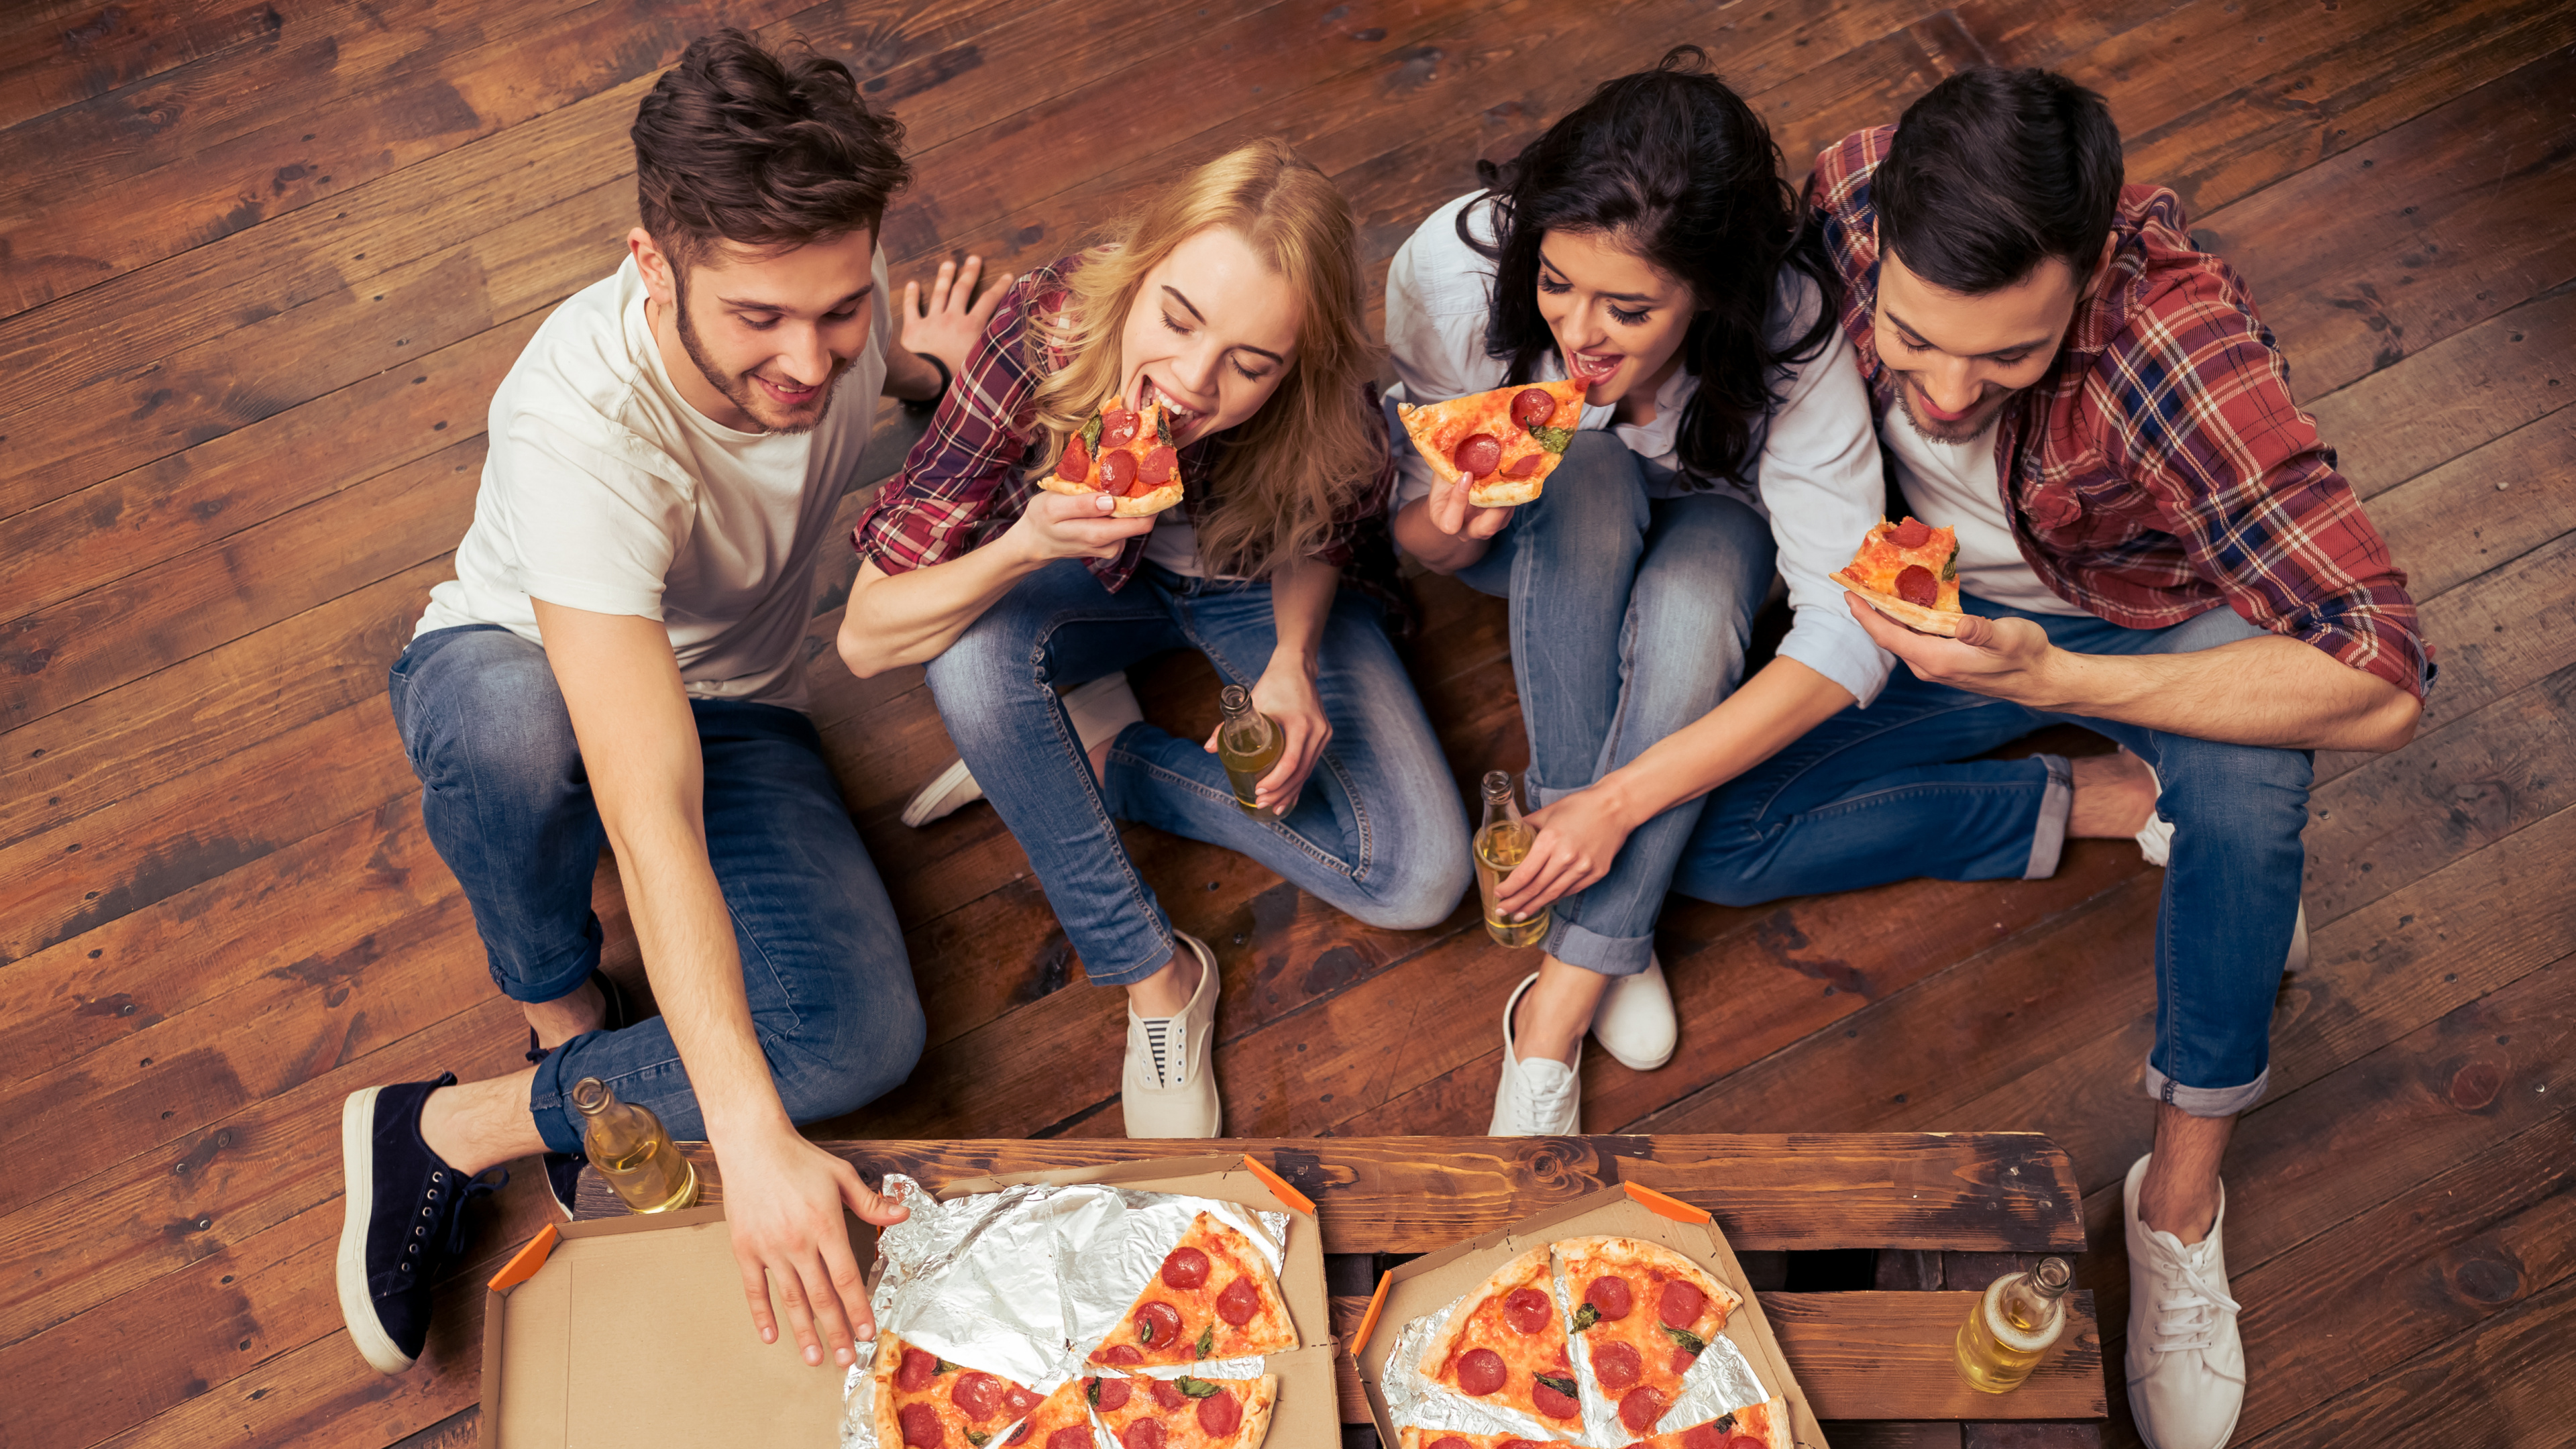 披萨, 意大利菜, 吃, 乐趣, 食品 壁纸 3840x2160 允许